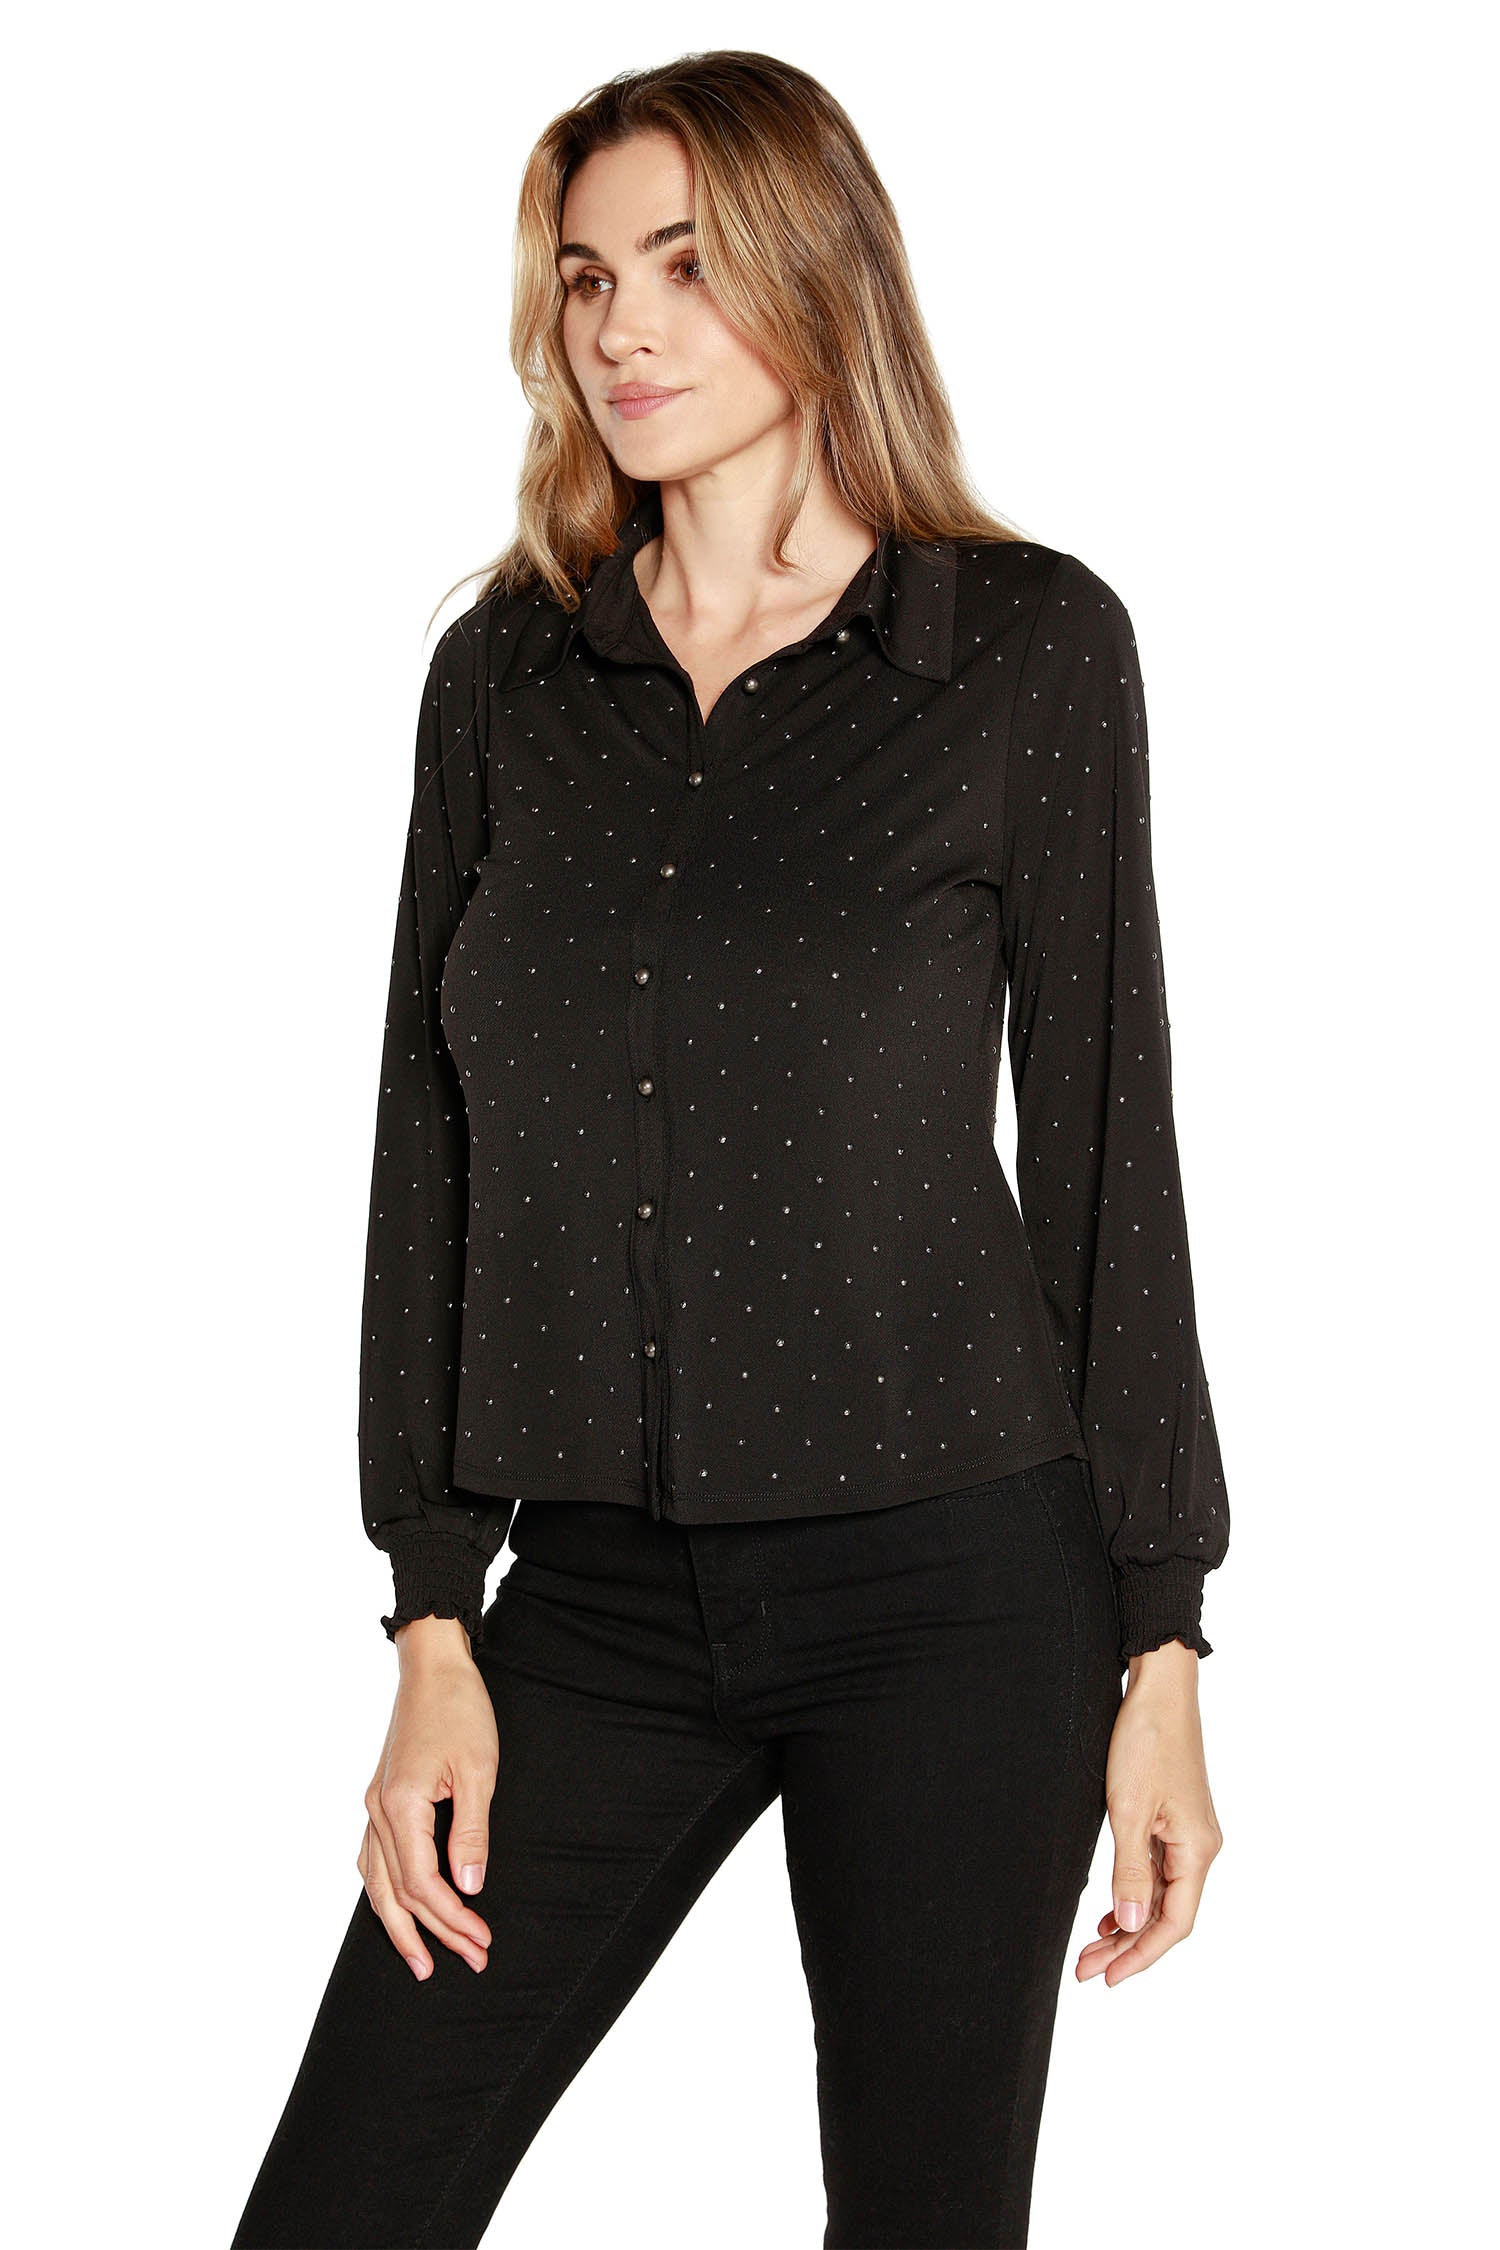 Blusa con botones delanteros y mangas largas tipo blusón para mujer en jersey con estampado de gel metálico